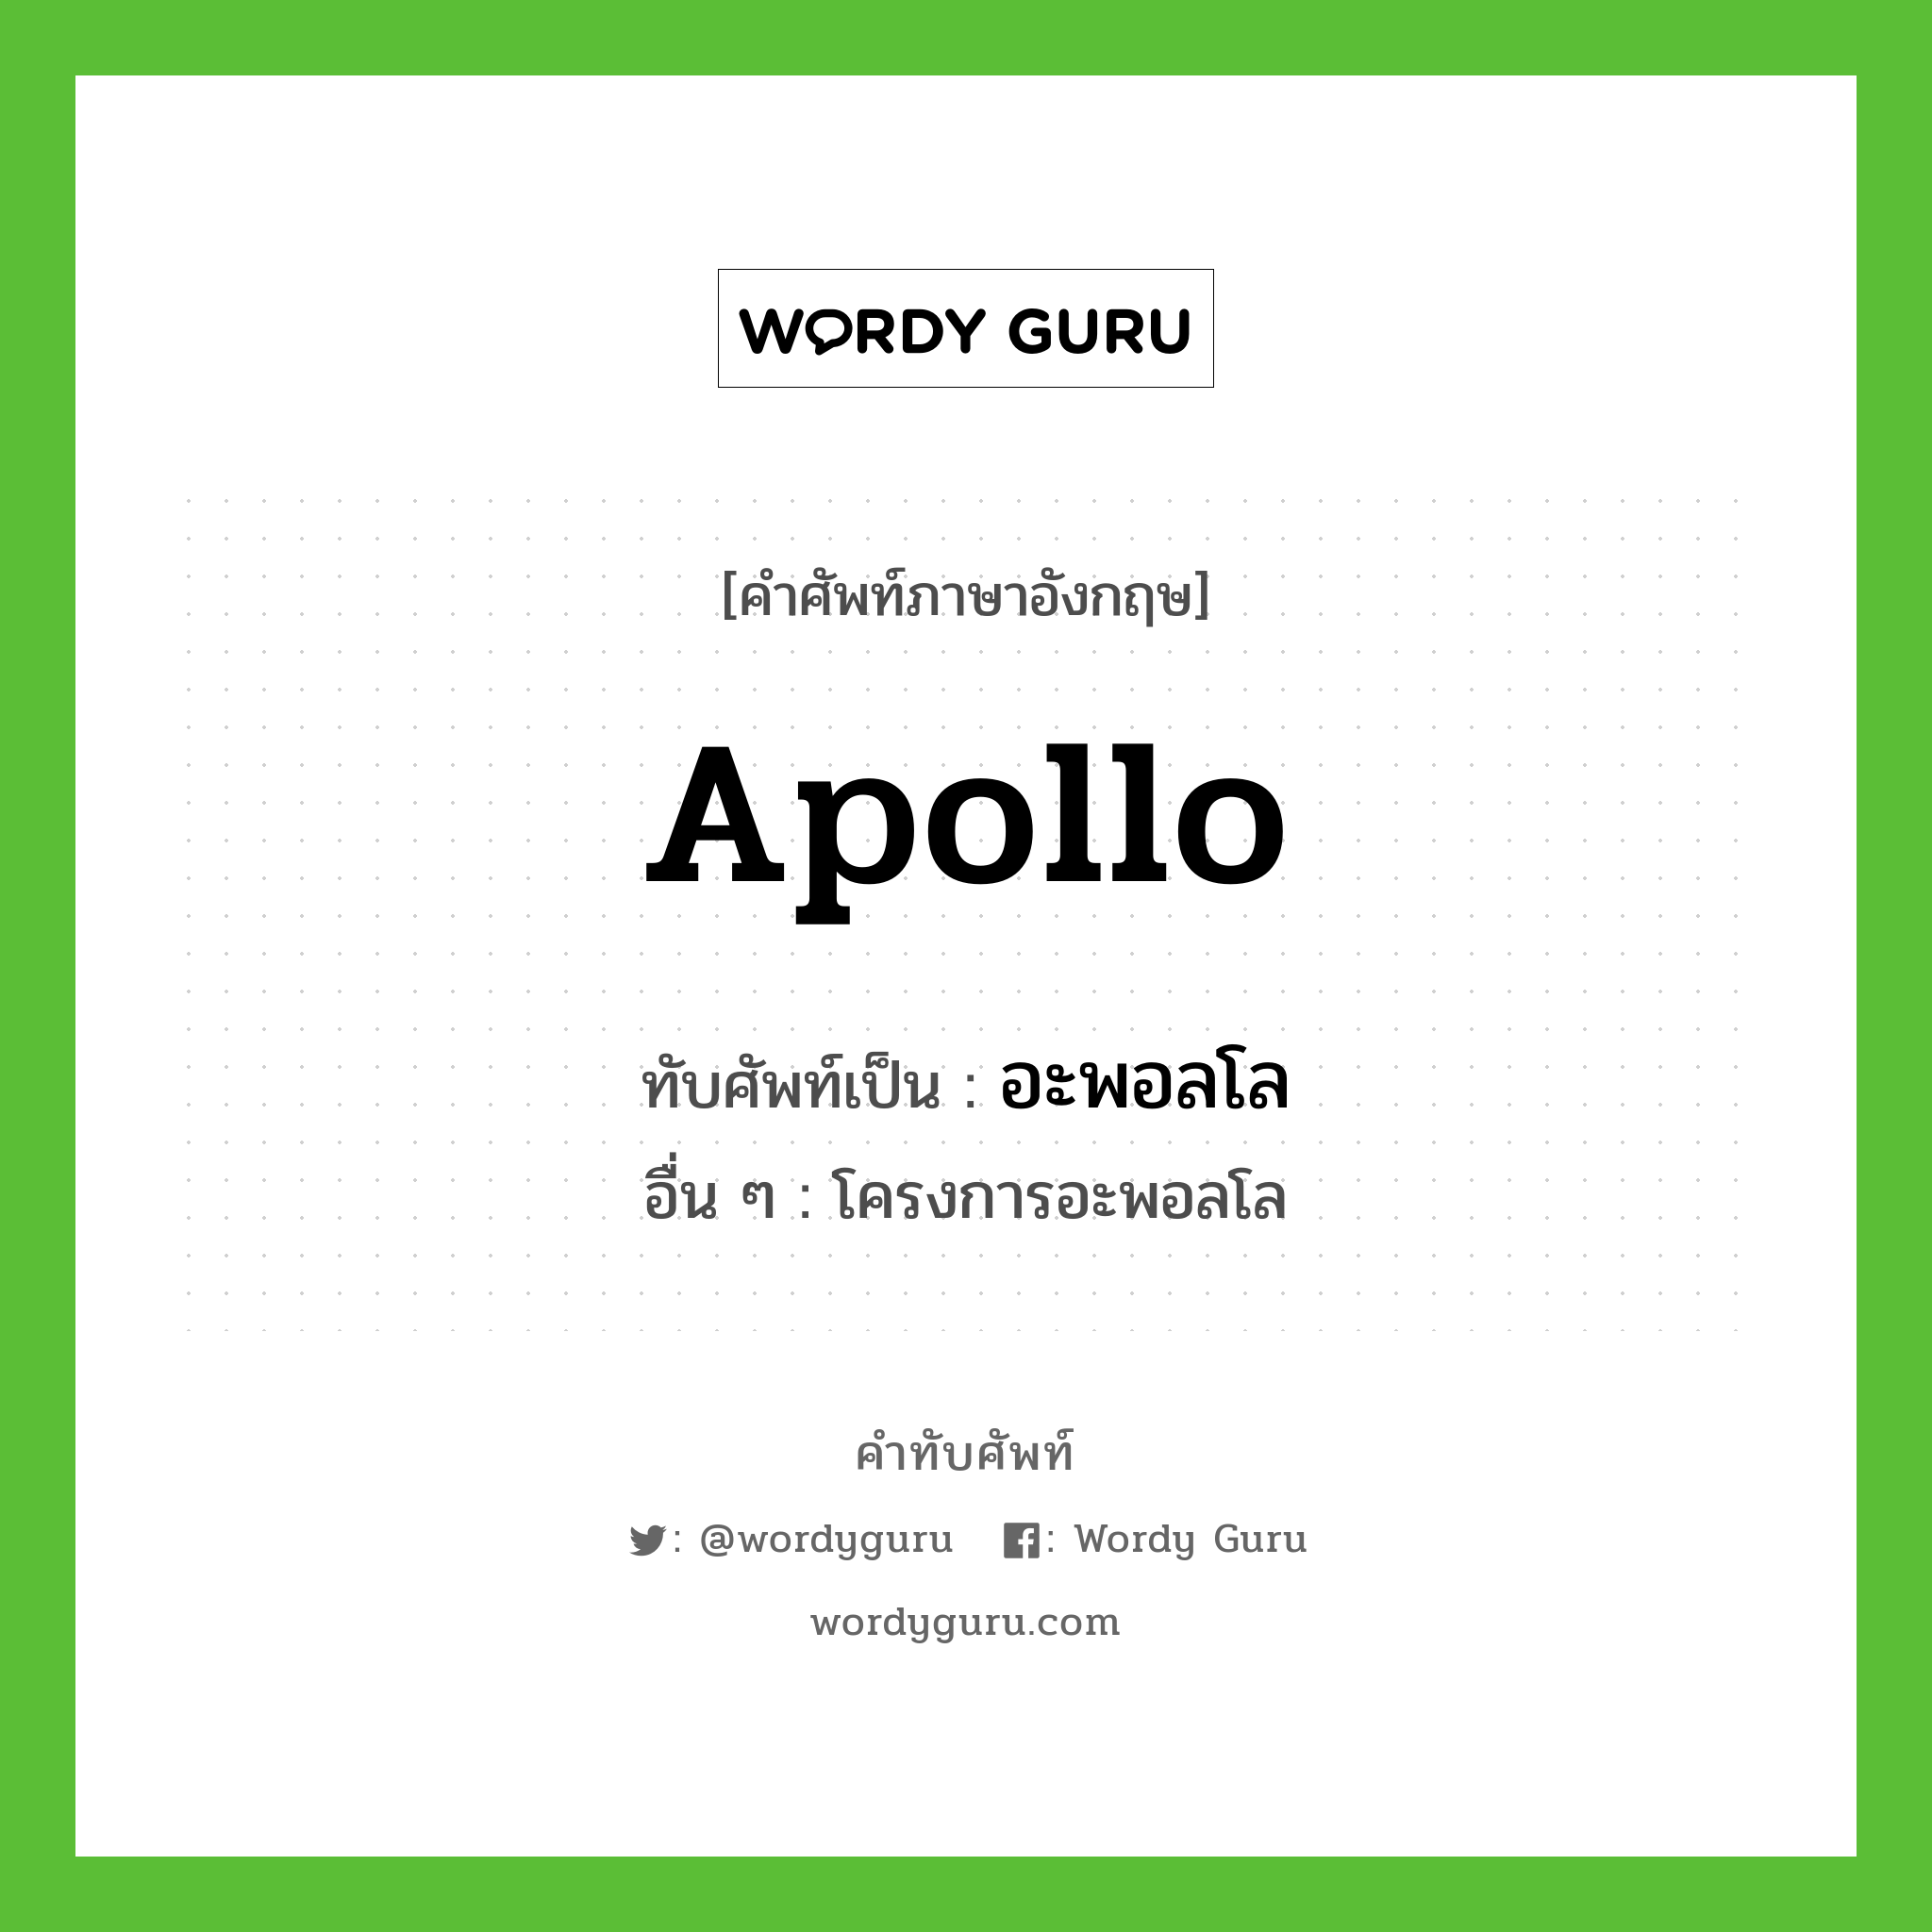 apollo เขียนเป็นคำไทยว่าอะไร?, คำศัพท์ภาษาอังกฤษ apollo ทับศัพท์เป็น อะพอลโล อื่น ๆ โครงการอะพอลโล